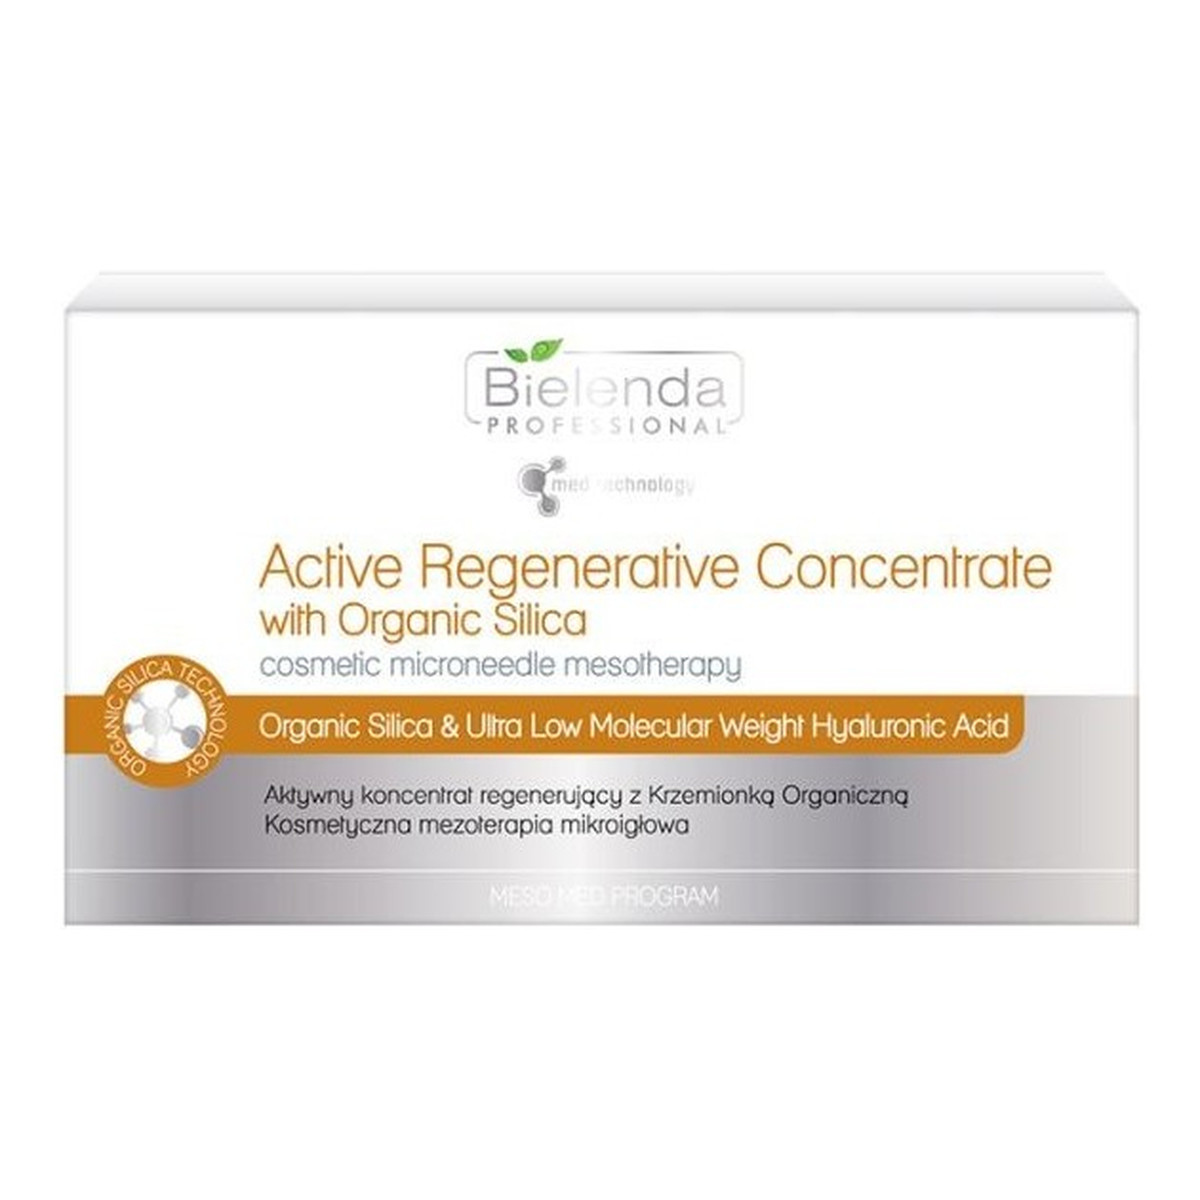 Bielenda PROFESSIONAL Active Regenerative Concentrate Aktywny koncentrat regenerujący z krzemionką organiczną 10x3ml 30ml